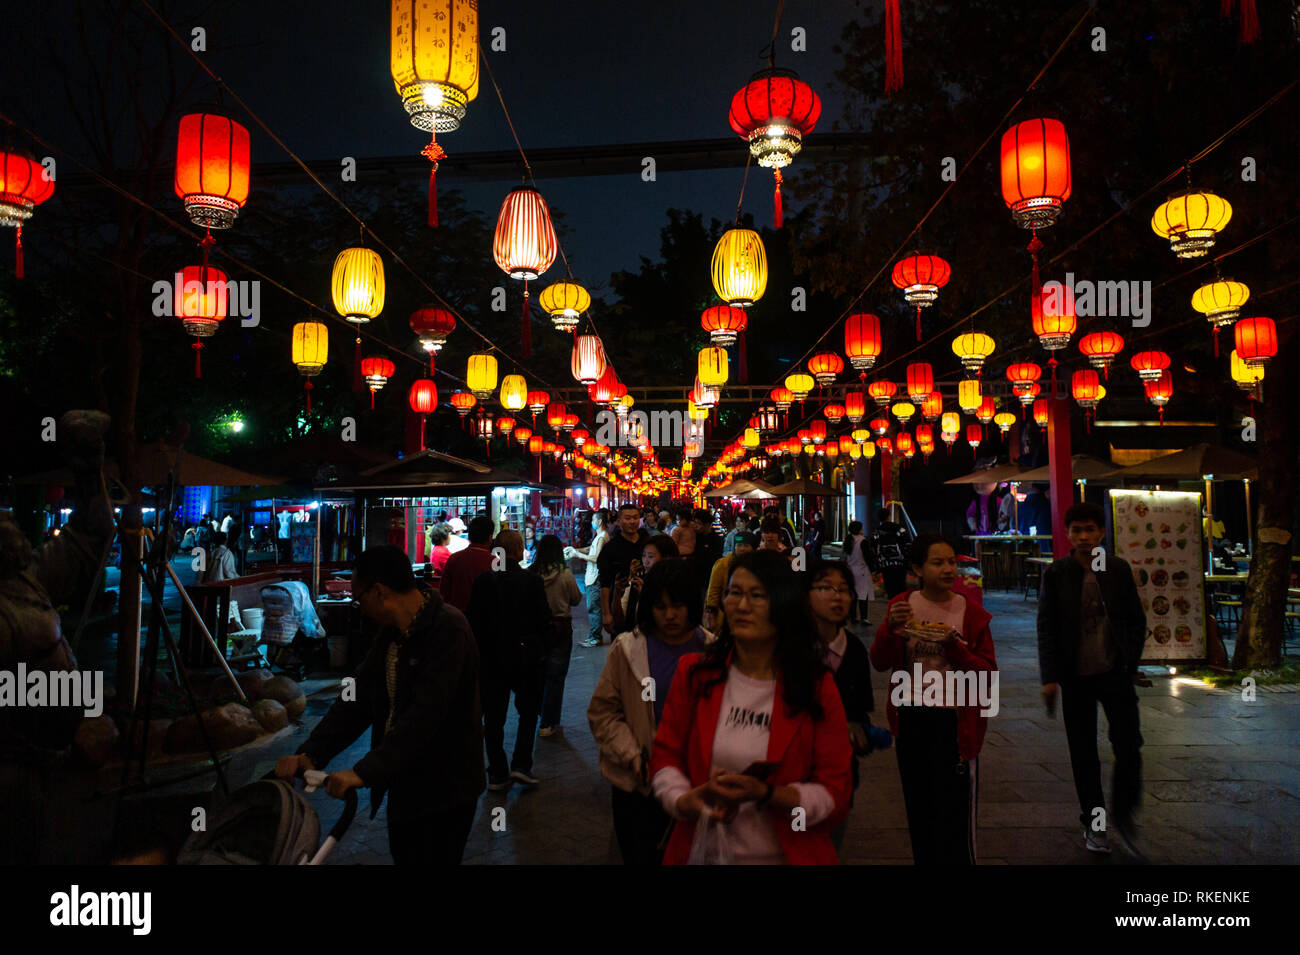 Chinesische Laternen in der Nacht während Laternenfest gefeiert mit bunten Laternen Displays und Dekorationen im Splendid China, chinesische Kultur Themenpark in Shenzhen, China. Stockfoto